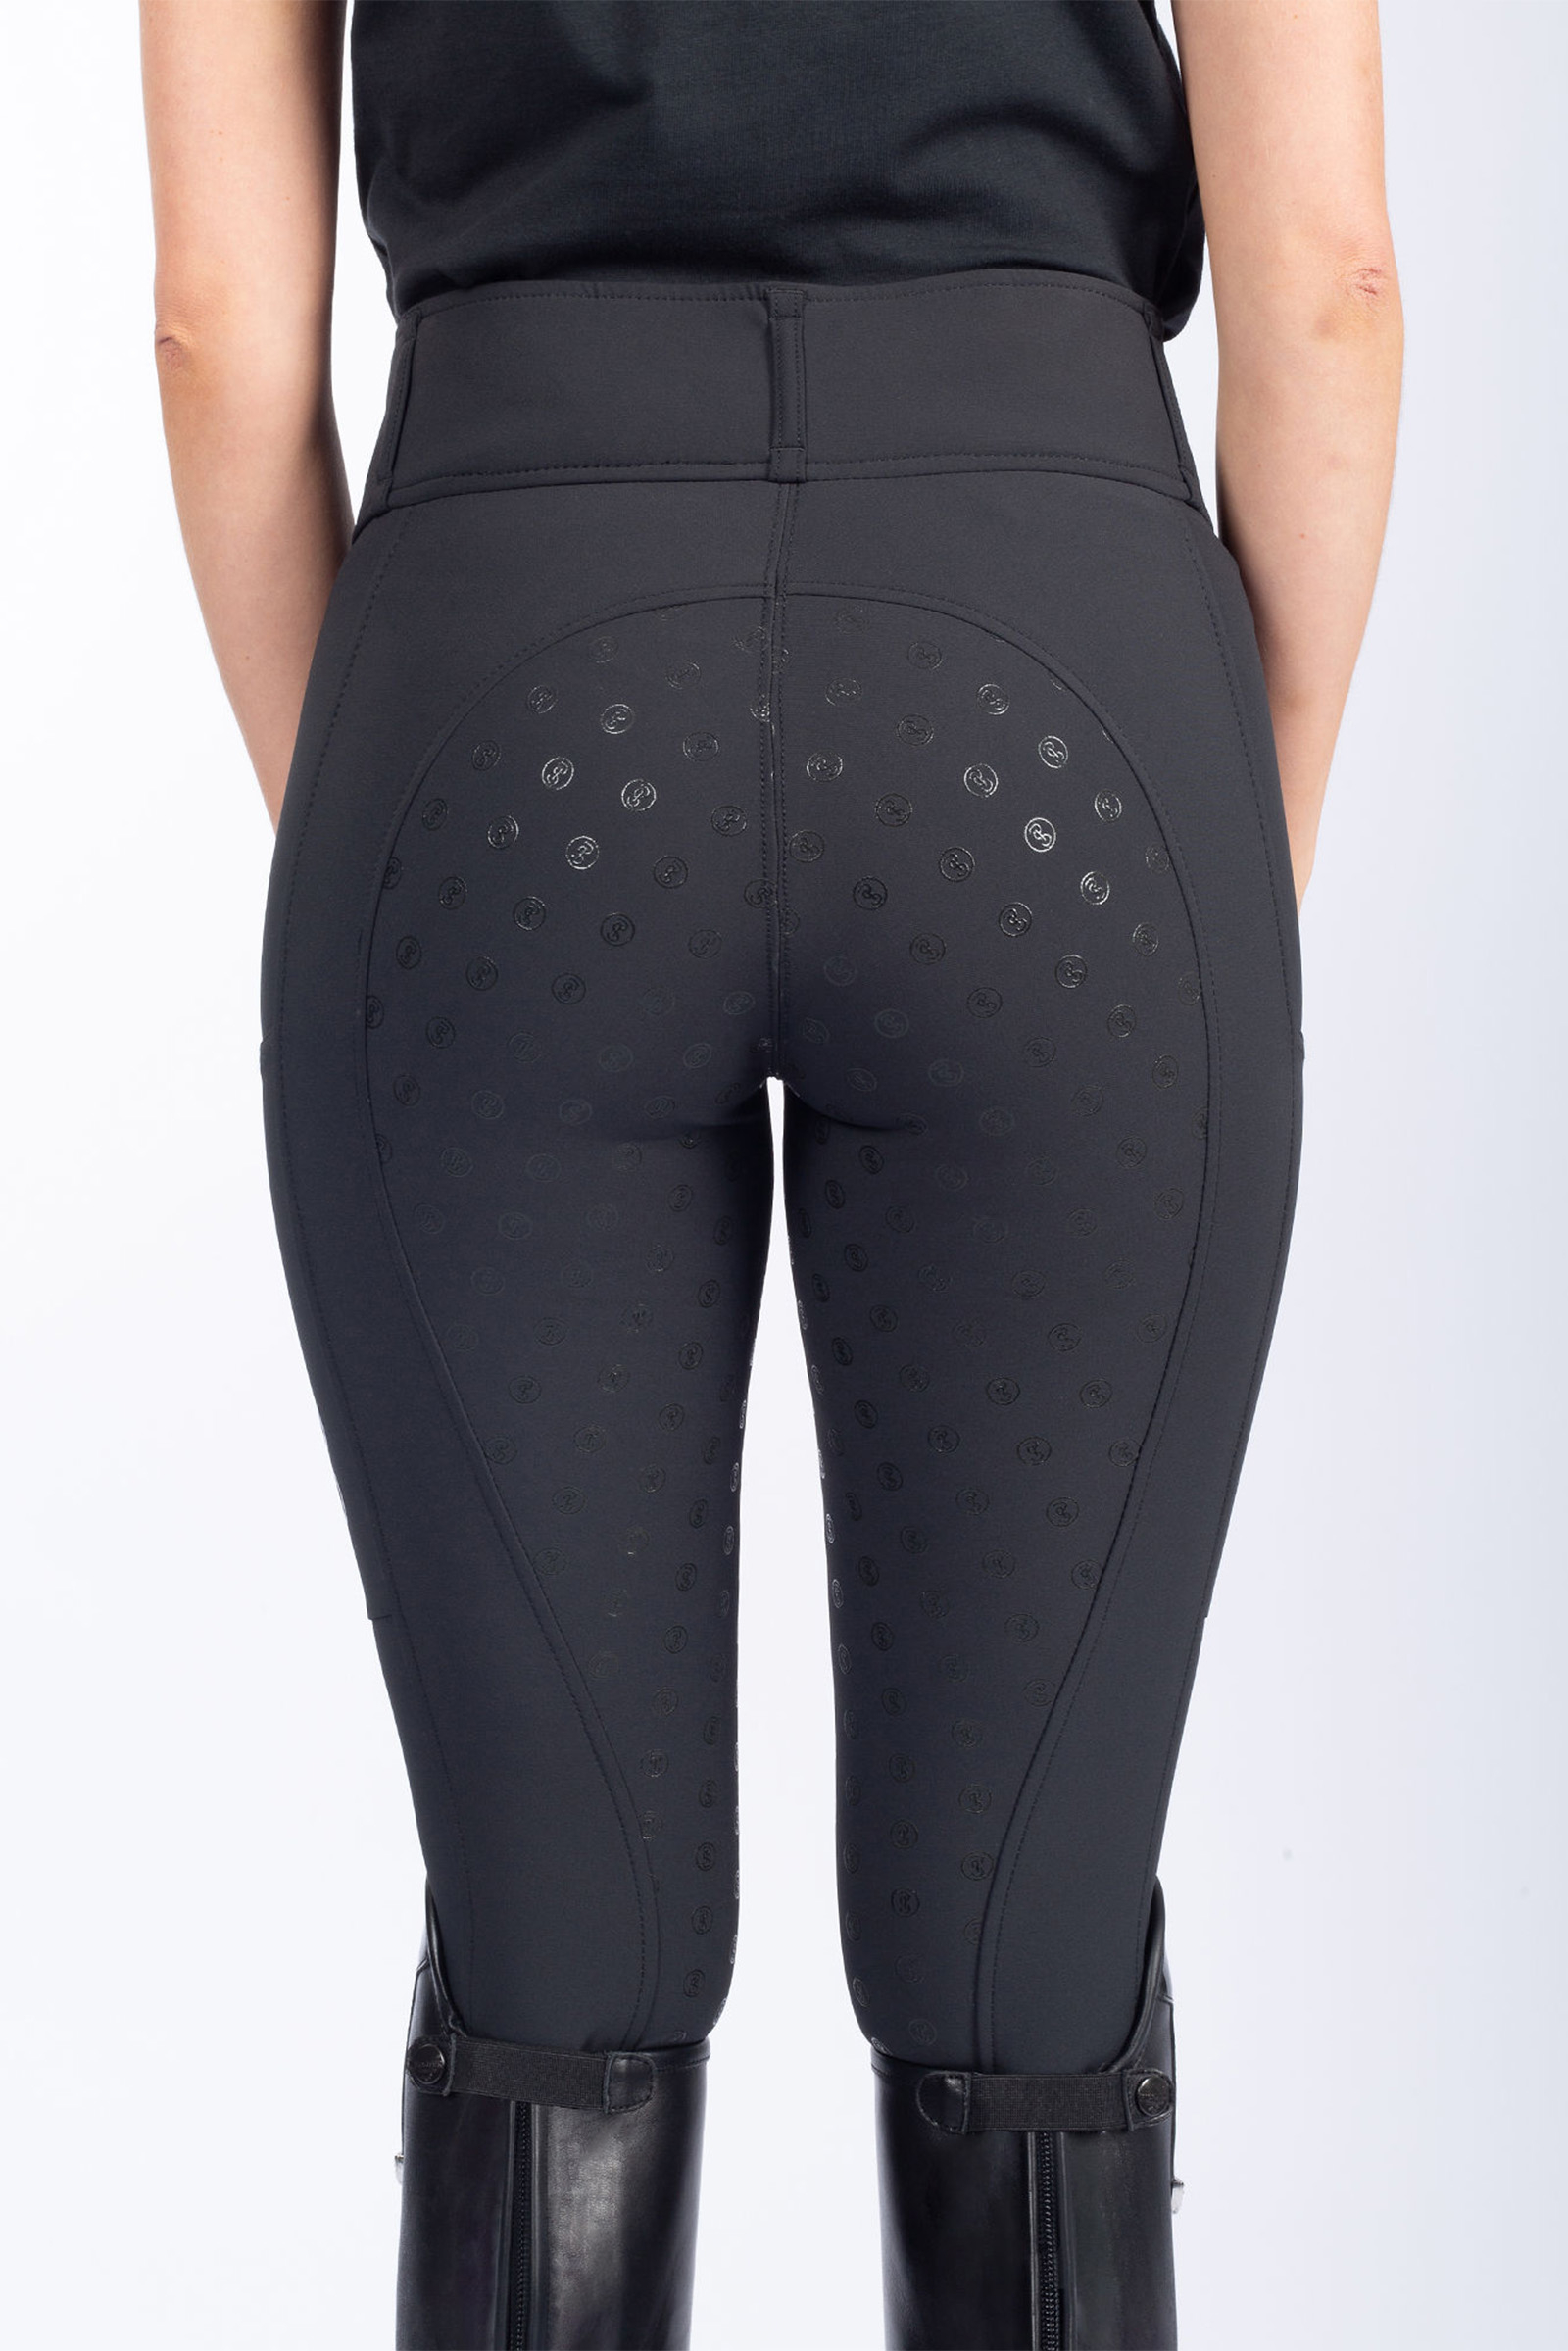 Comprar Pantalones de completos para mujer Britney de PS of Sweden ahora |